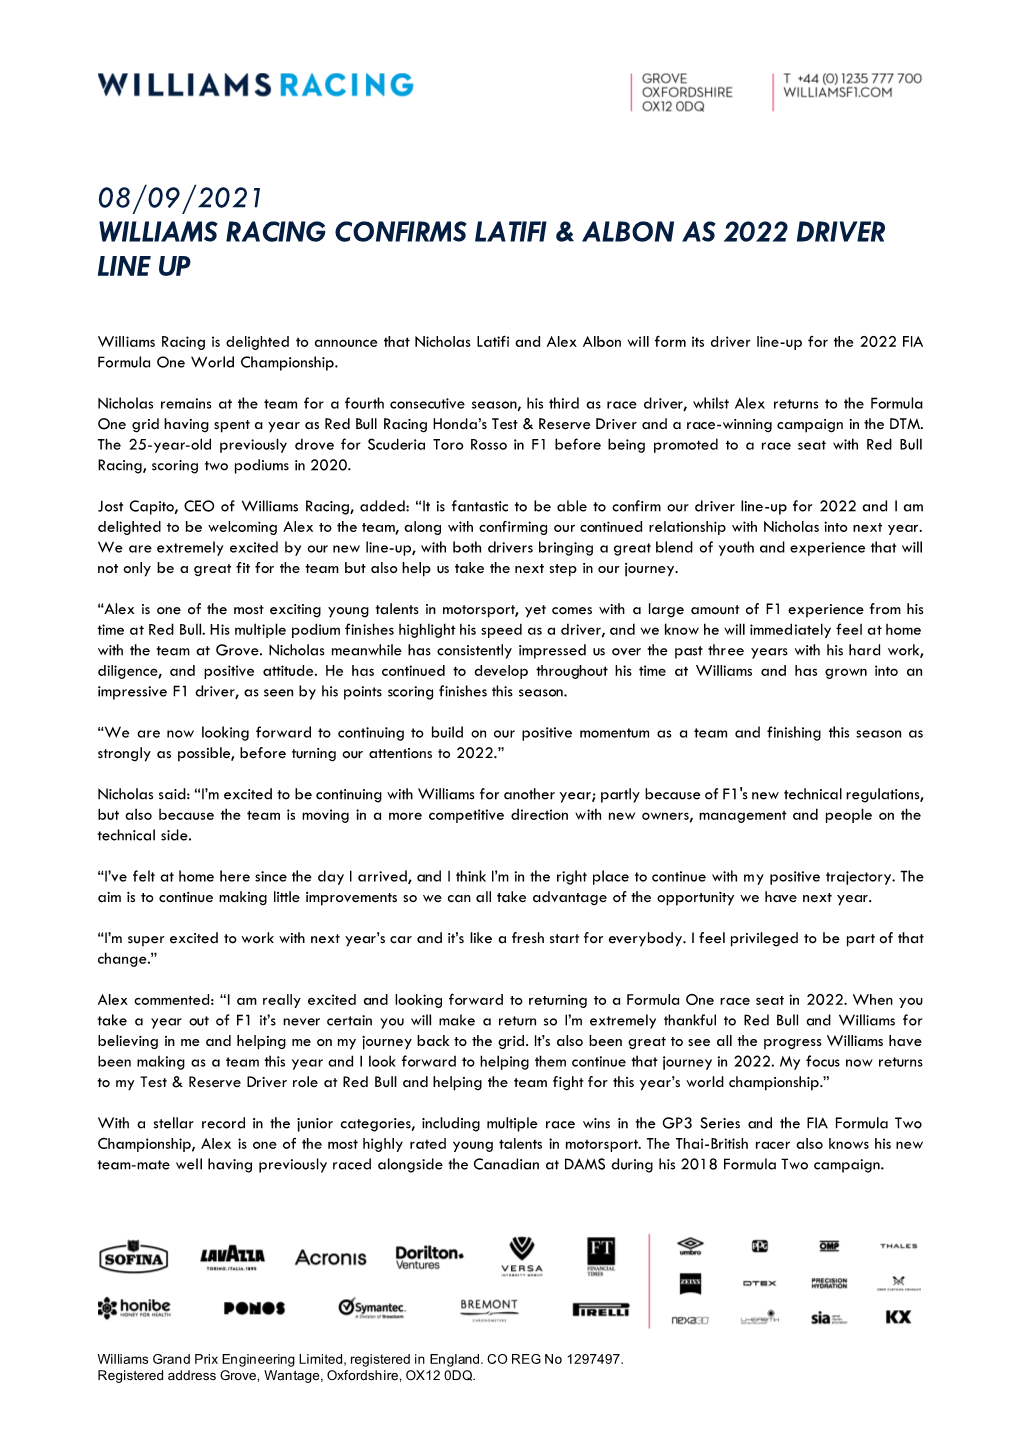 08/09/2021 Williams Racing Confirms Latifi & Albon As 2022 Driver Line Up